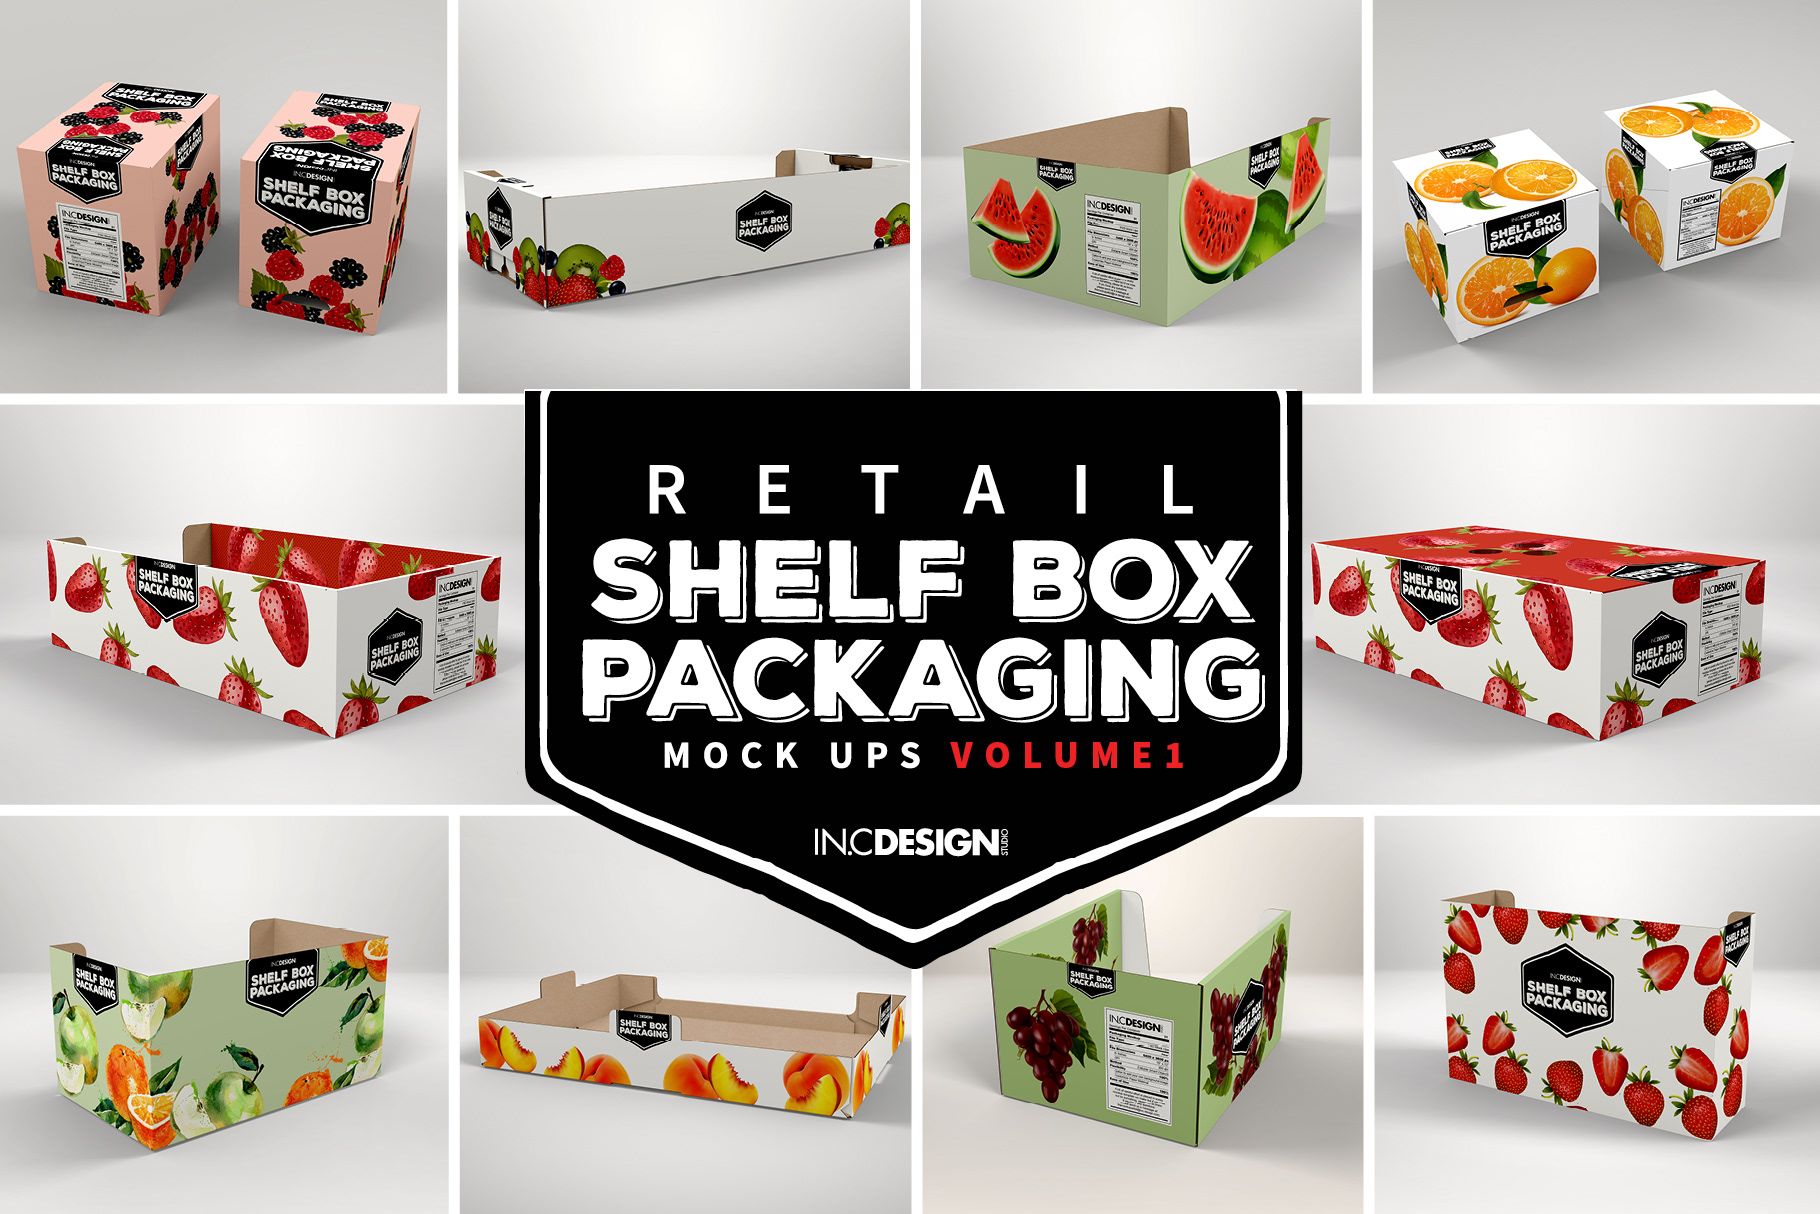 Download IN.C DESIGN STUDIO - Mockup Template: Retail Shelf Box Packaging Vol 01